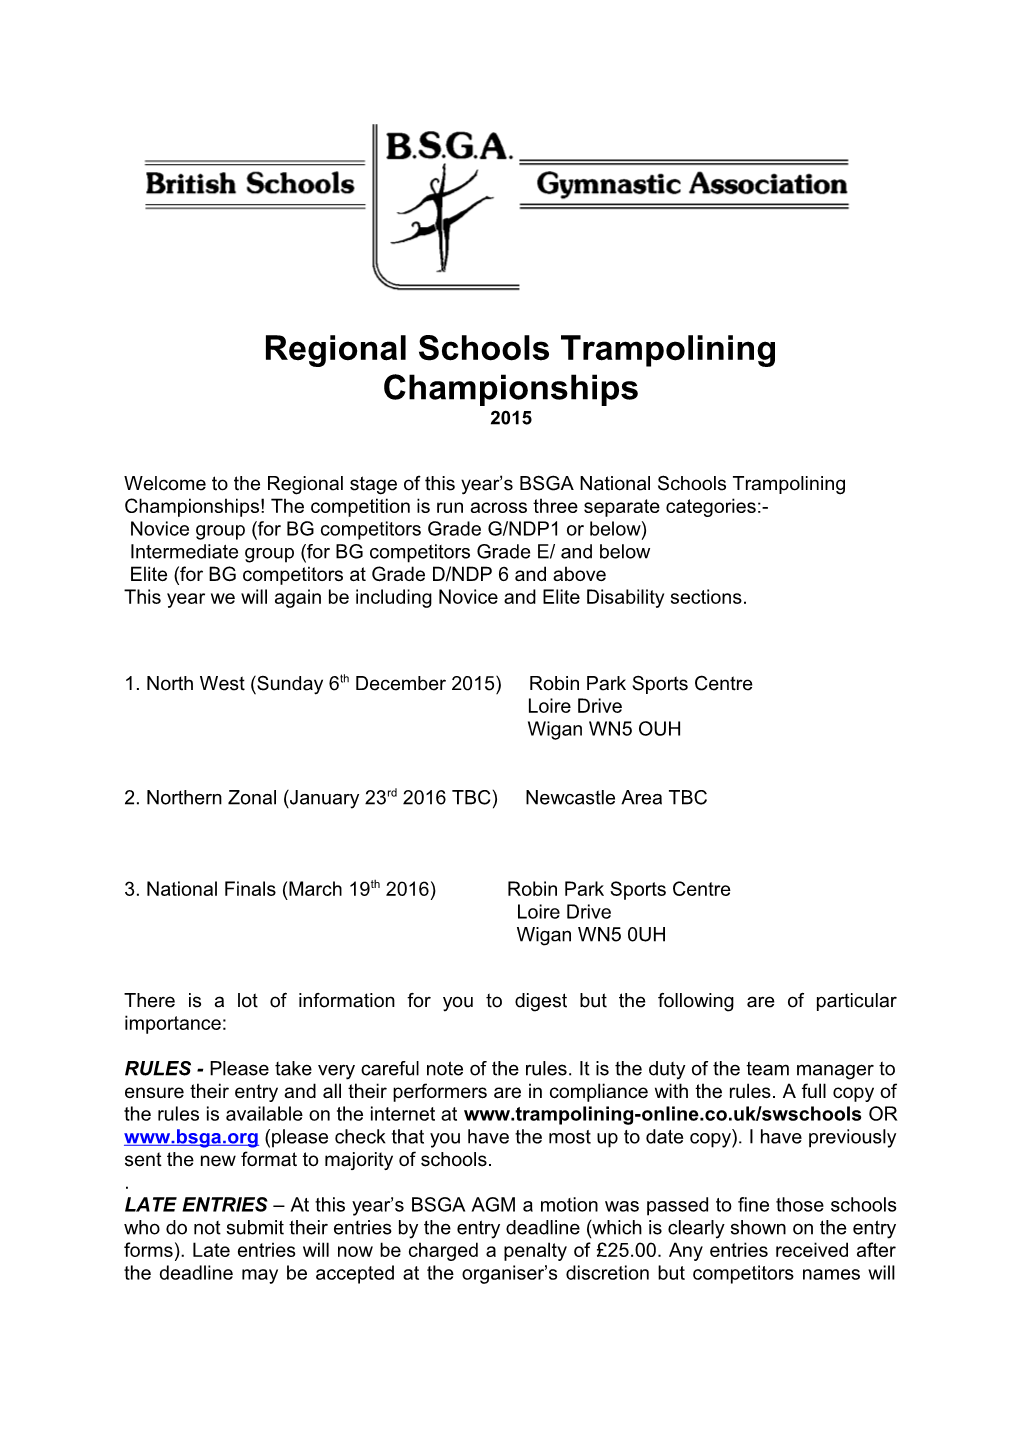 Regional Schools Trampolining Championships